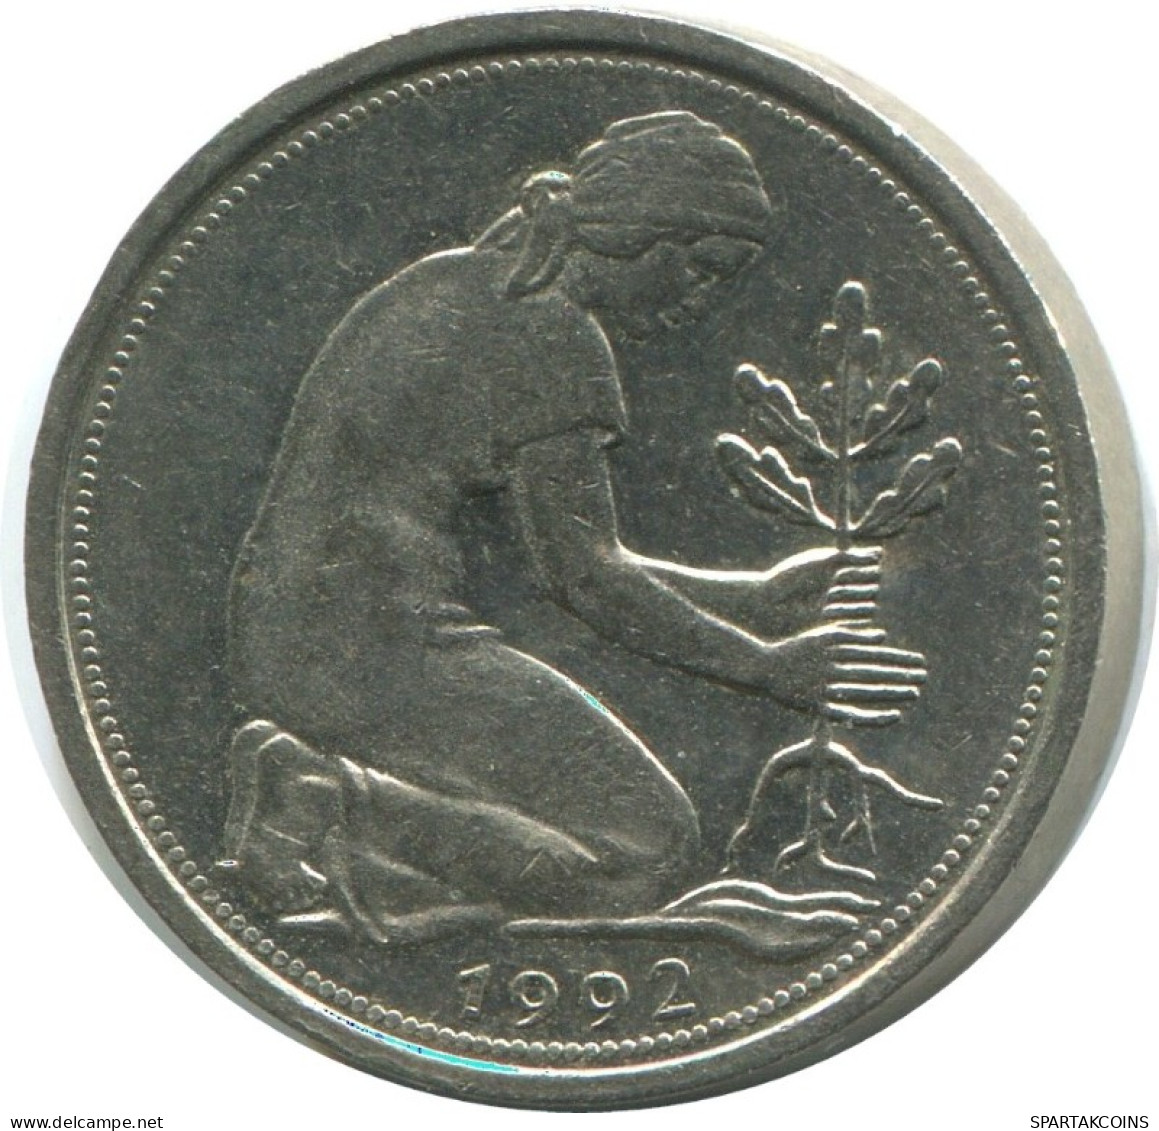 50 PFENNIG 1992 G WEST & UNIFIED GERMANY Coin #AG329.3.U.A - 50 Pfennig